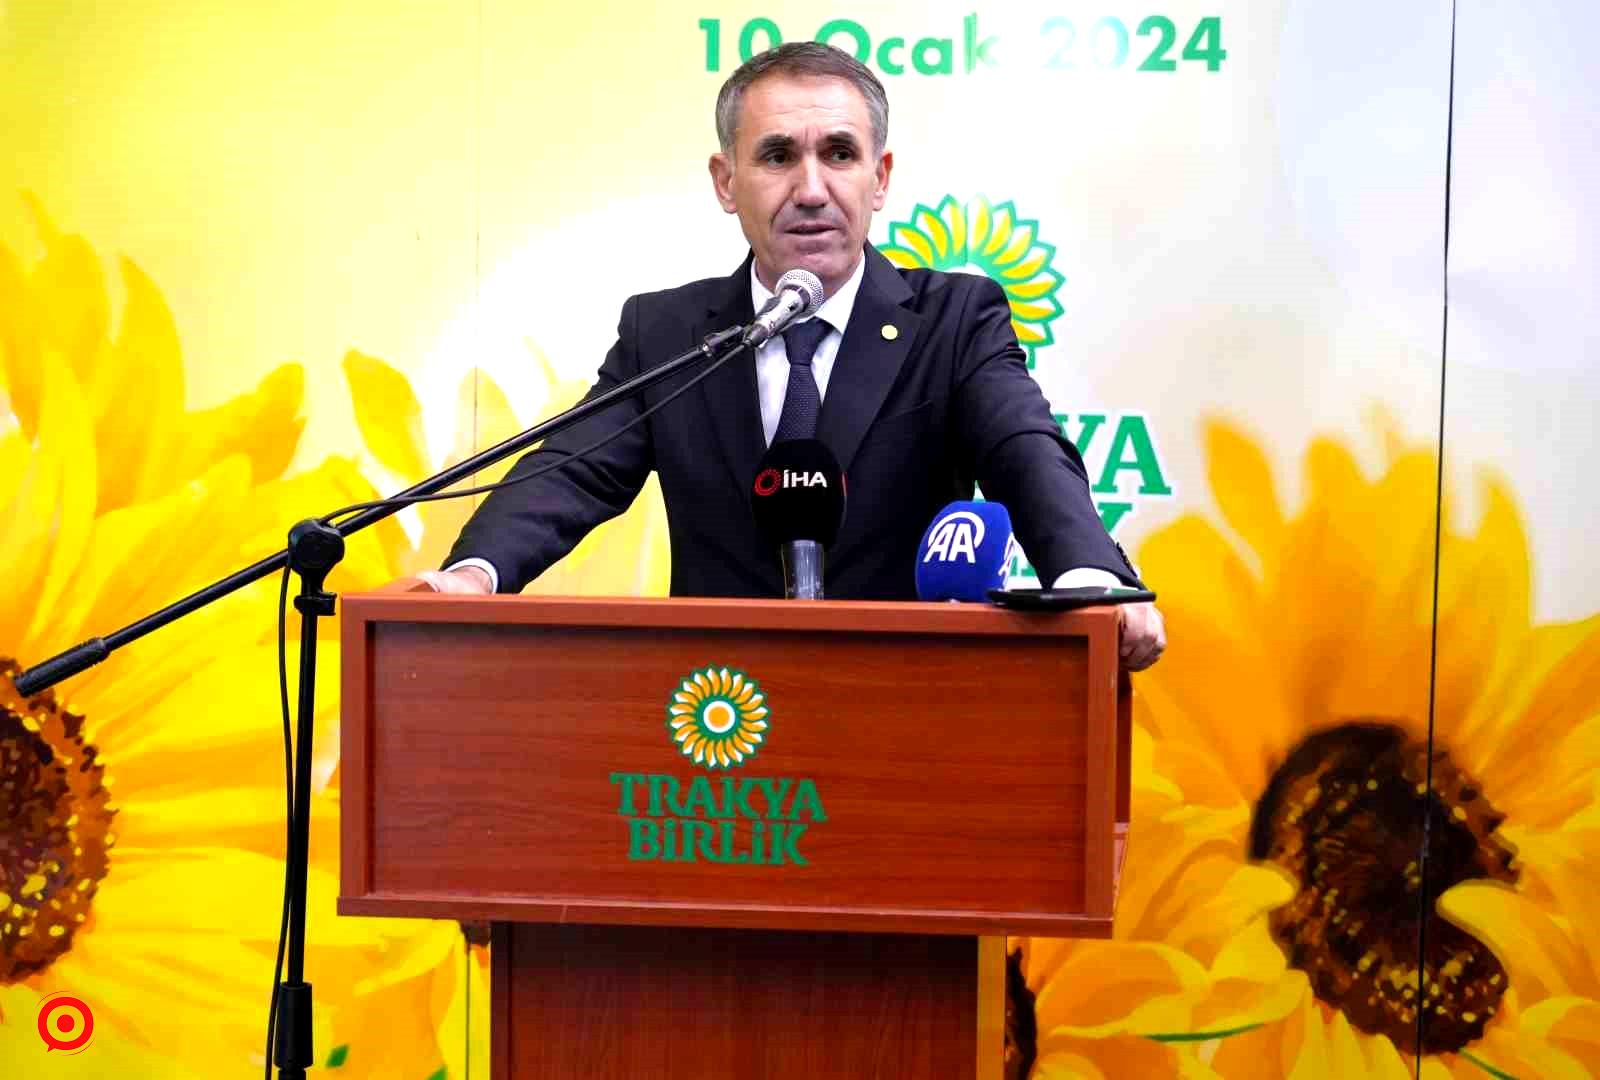 Trakya Birlik Başkanı Kırbiç: "Kuraklık, ayçiçek verimini olumsuz yönde etkilemiştir"